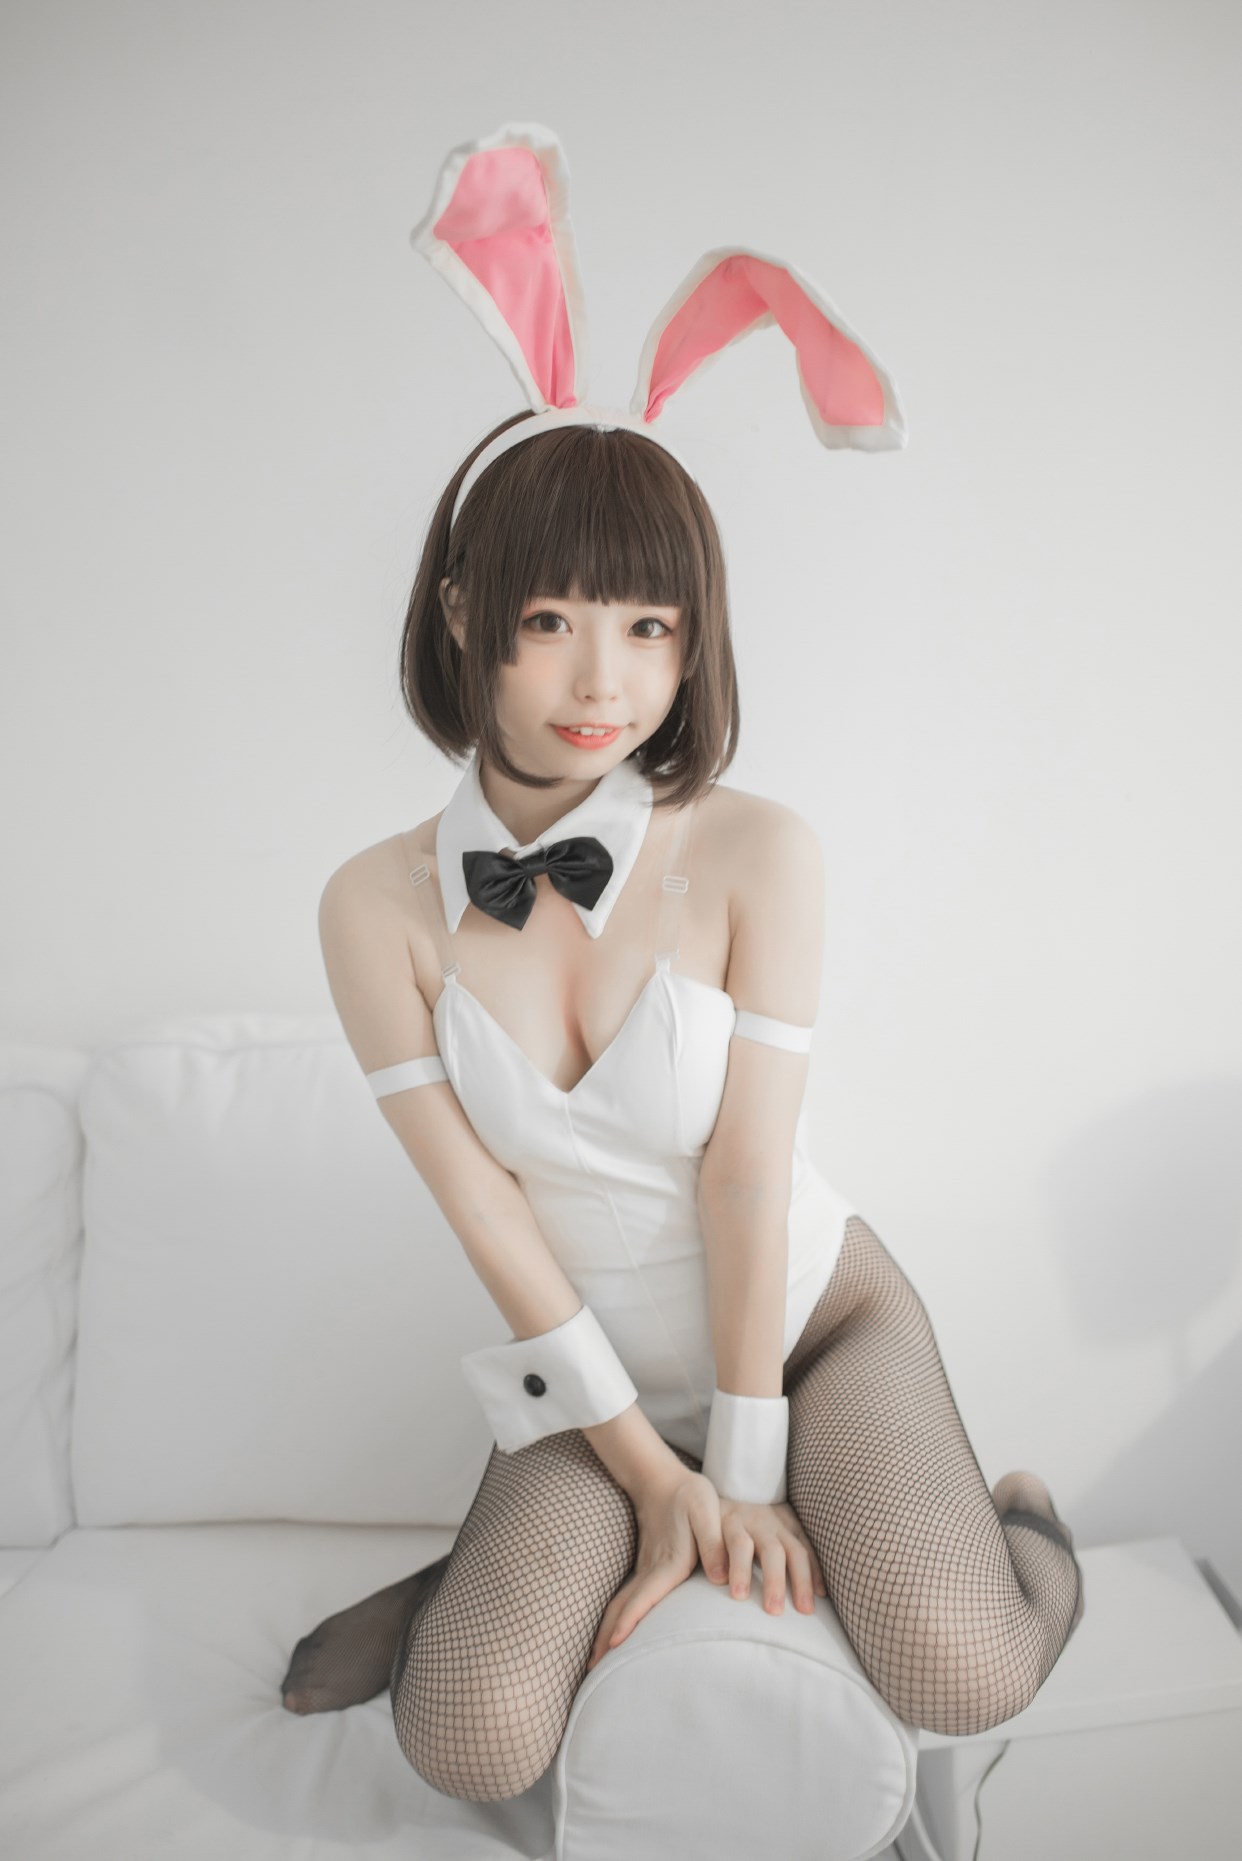 【兔玩映画】兔女郎vol.22-萝莉 兔玩映画 第21张